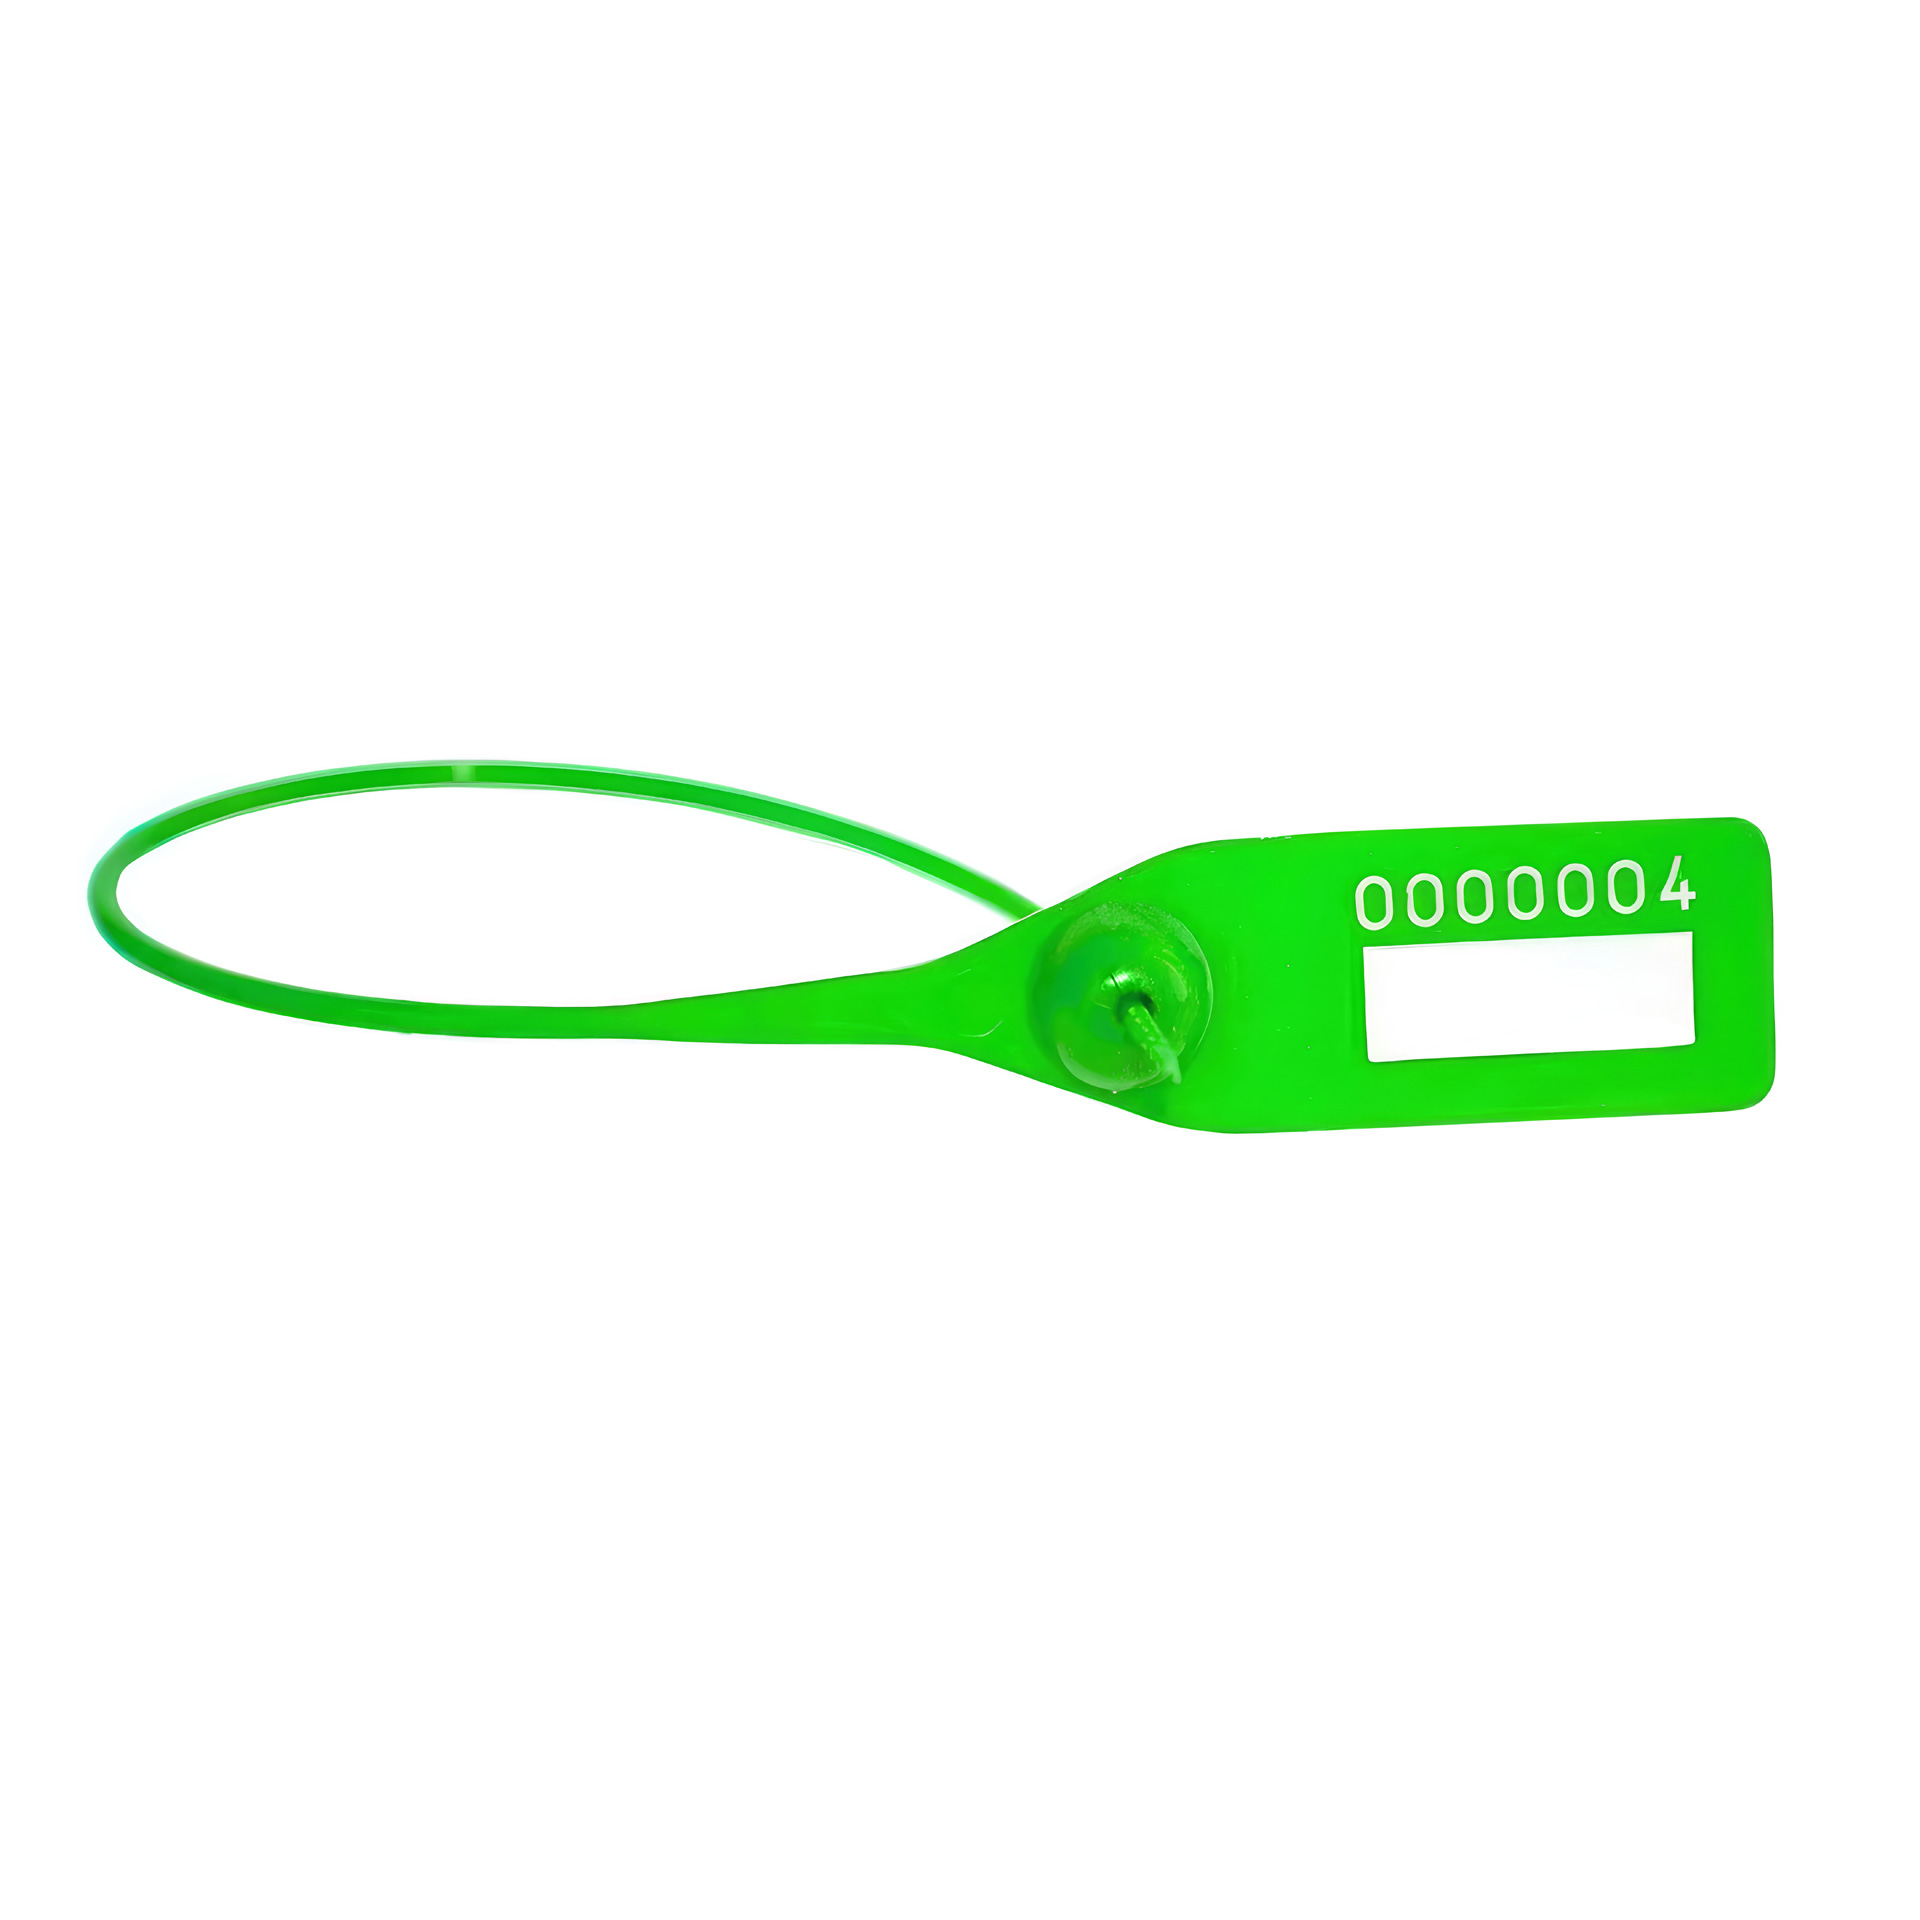 Пломба номерная пластиковая ОСА-230 зеленый оптом в наличии, на заказ